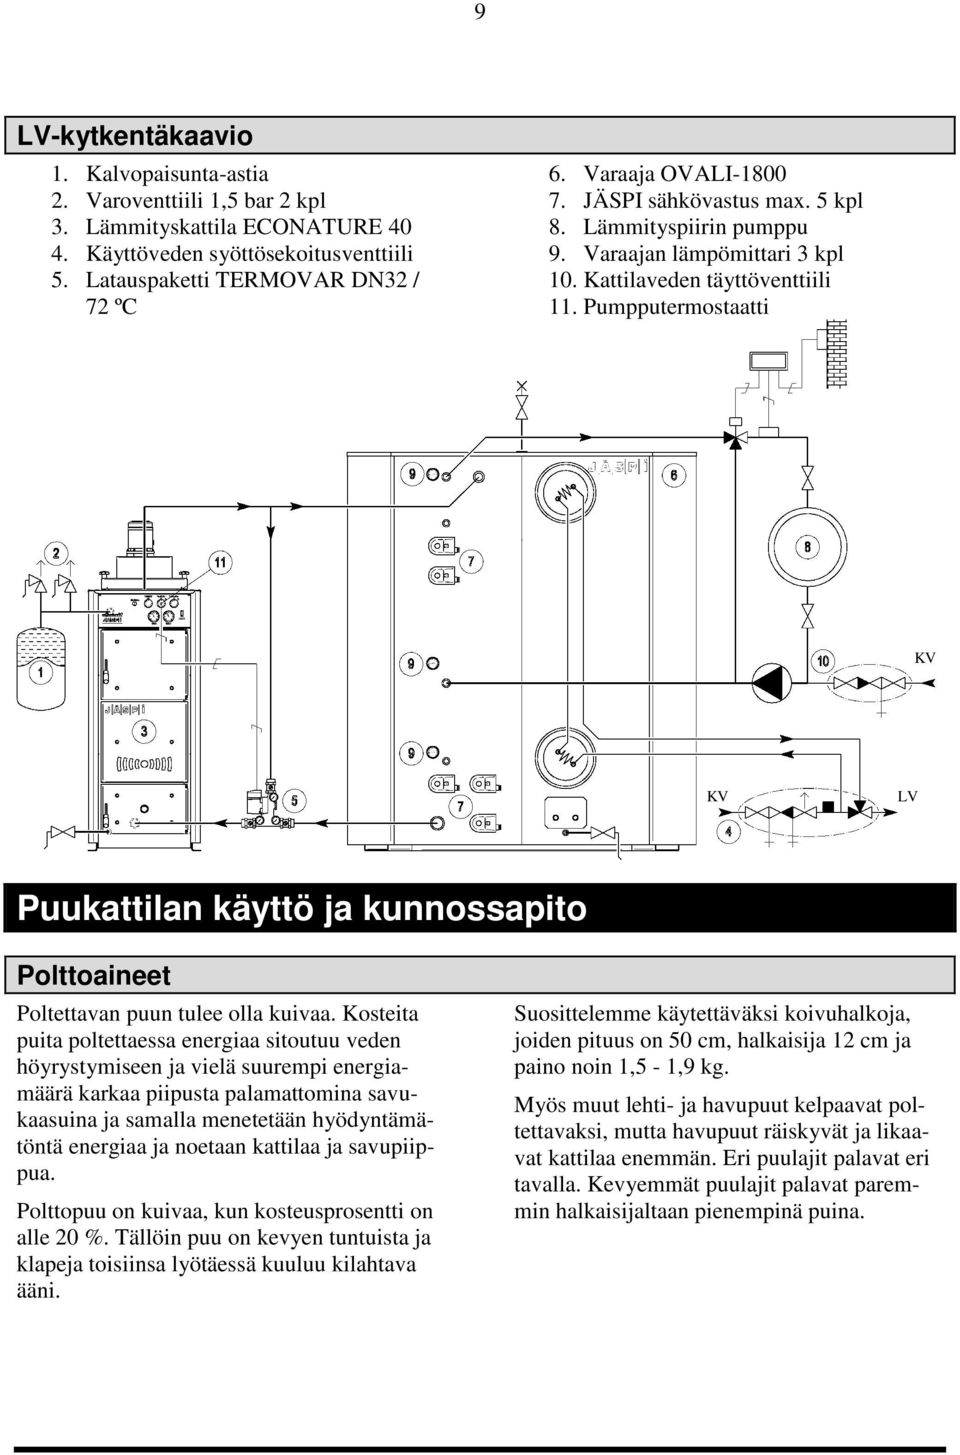 Pumpputermostaatti KV KV LV Puukattilan käyttö ja kunnossapito Polttoaineet Poltettavan puun tulee olla kuivaa.